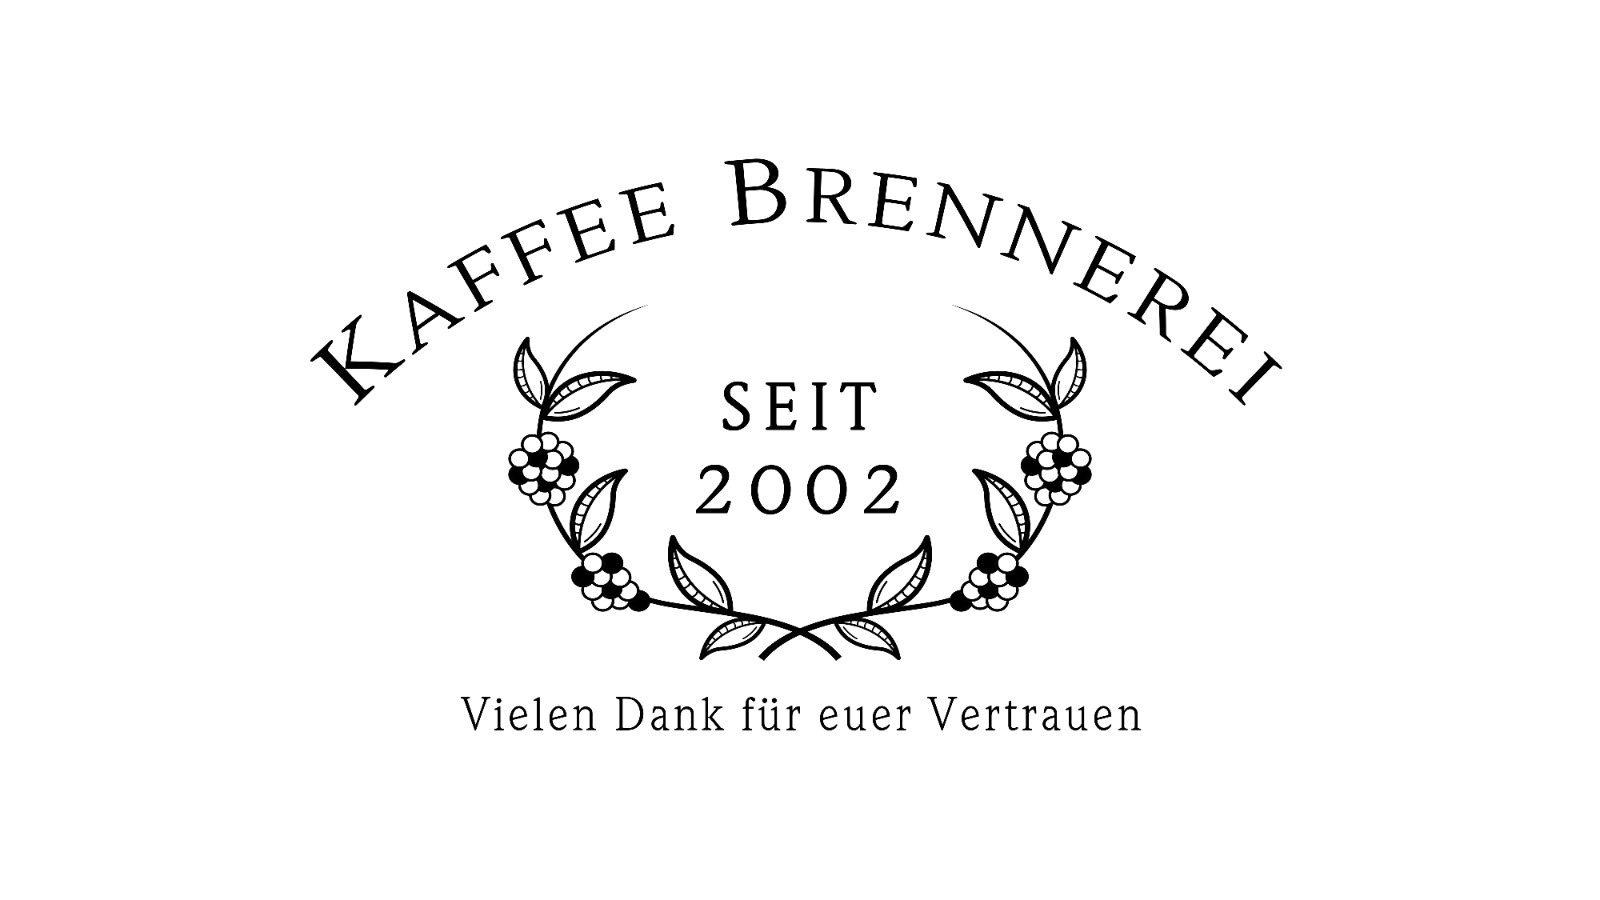 Kaffee Brennerei seit 2002